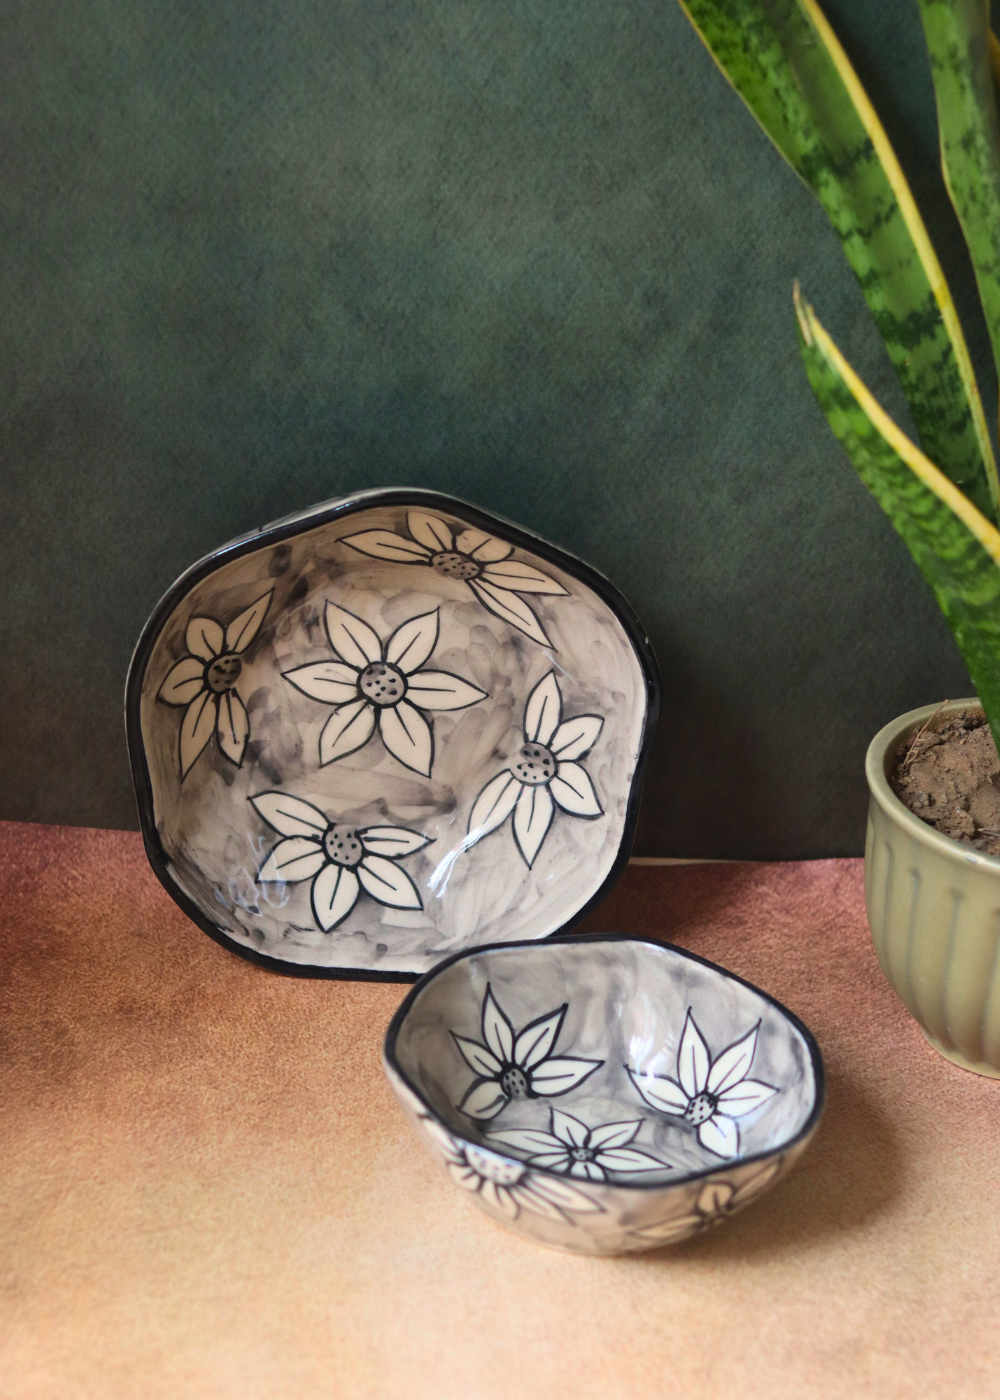 Handmade ceramic stunning breakfast bowls